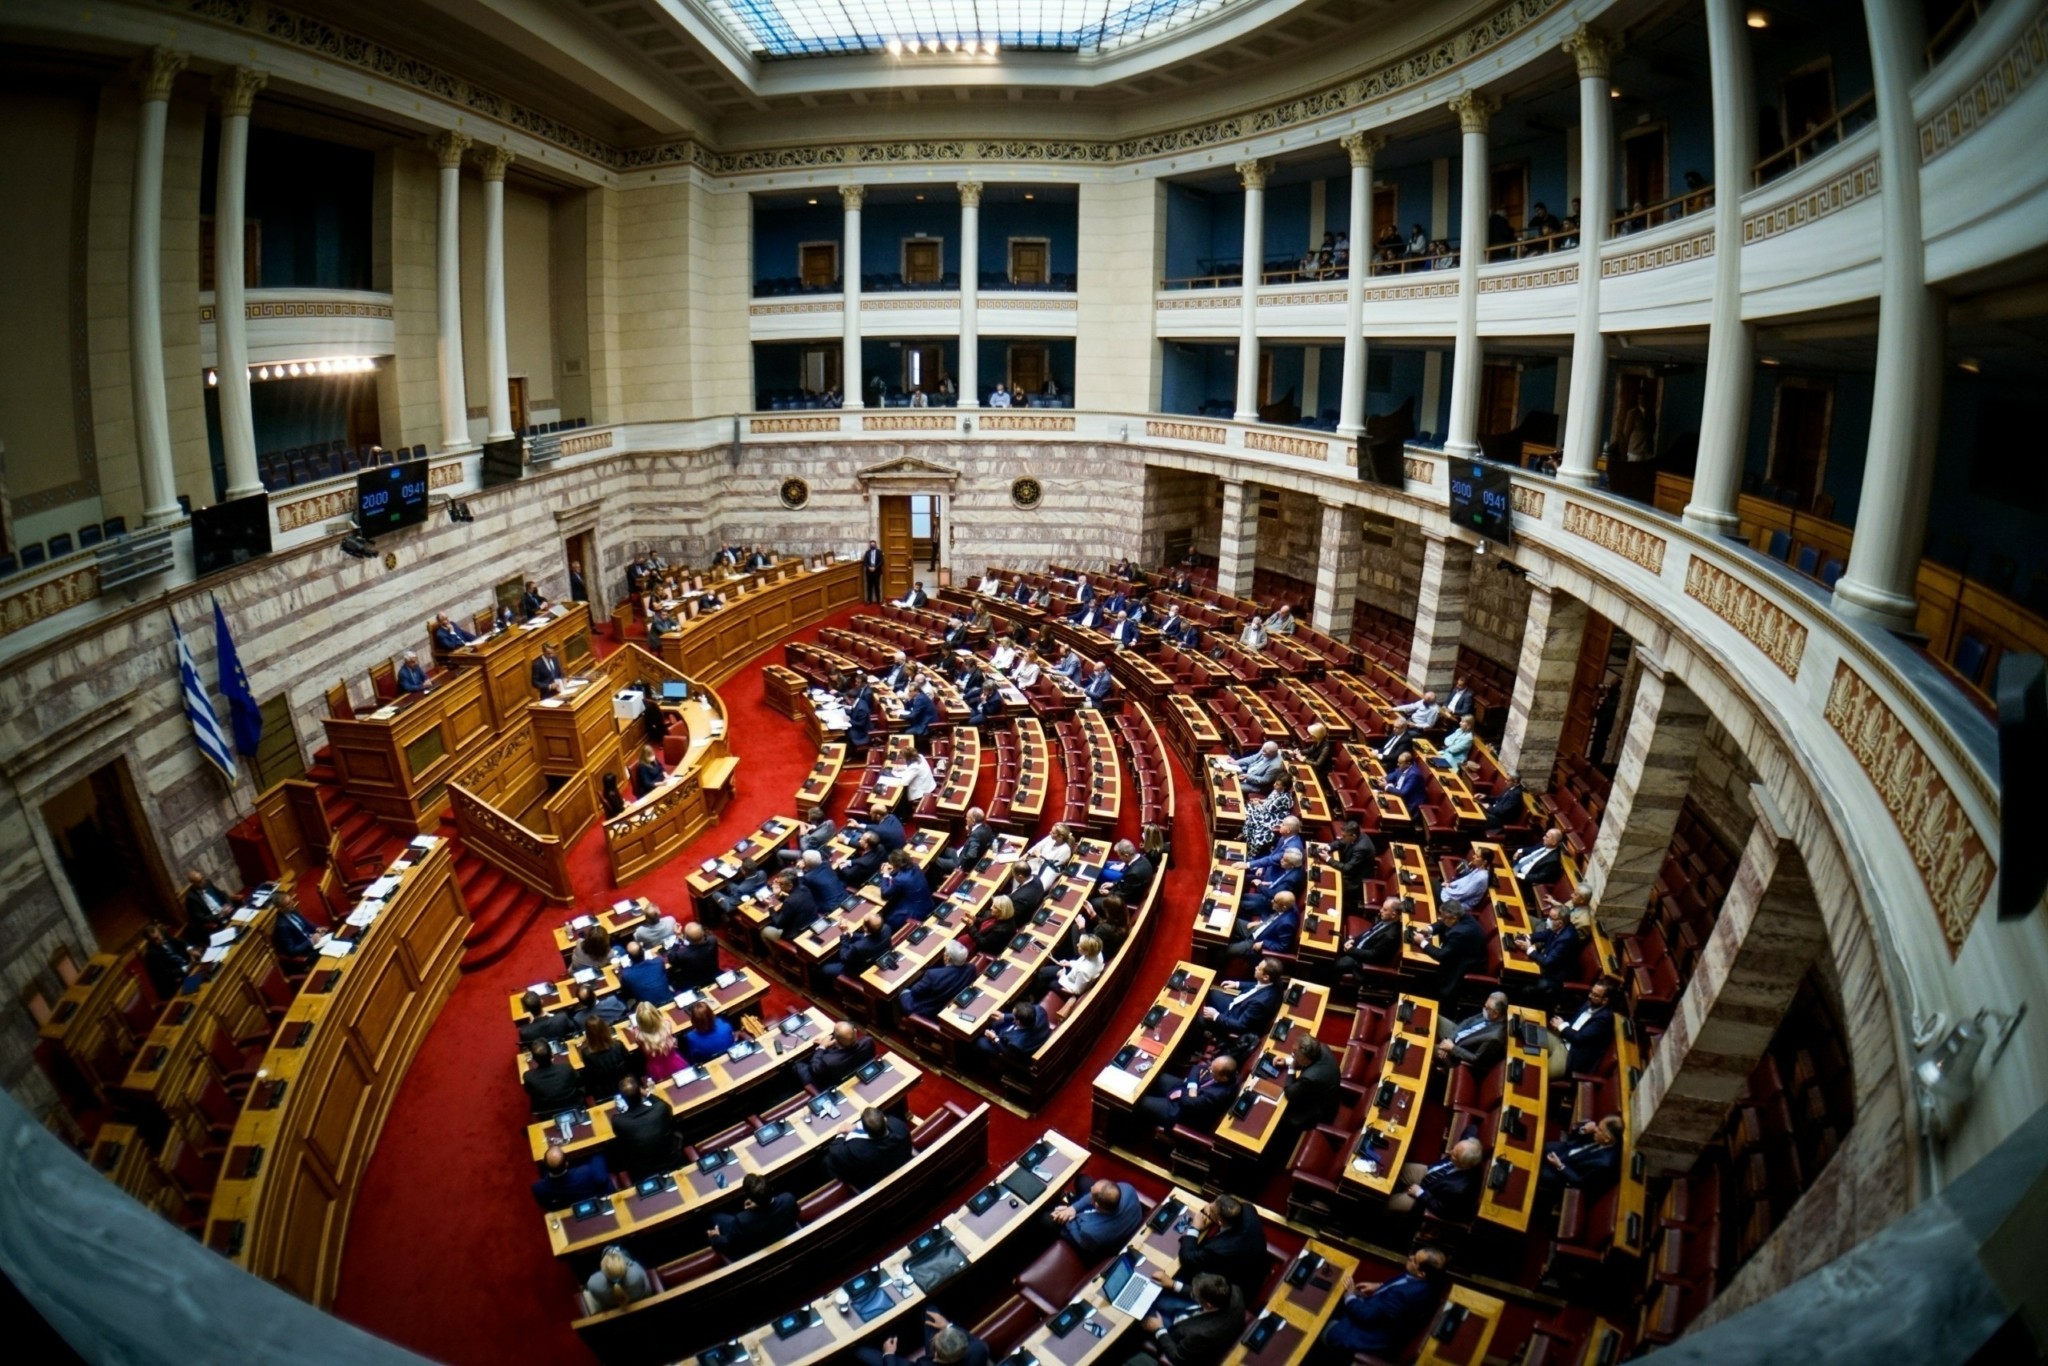 Βουλή: Υπερψηφίστηκε με 158 «ναι» το εργασιακό νομοσχέδιο